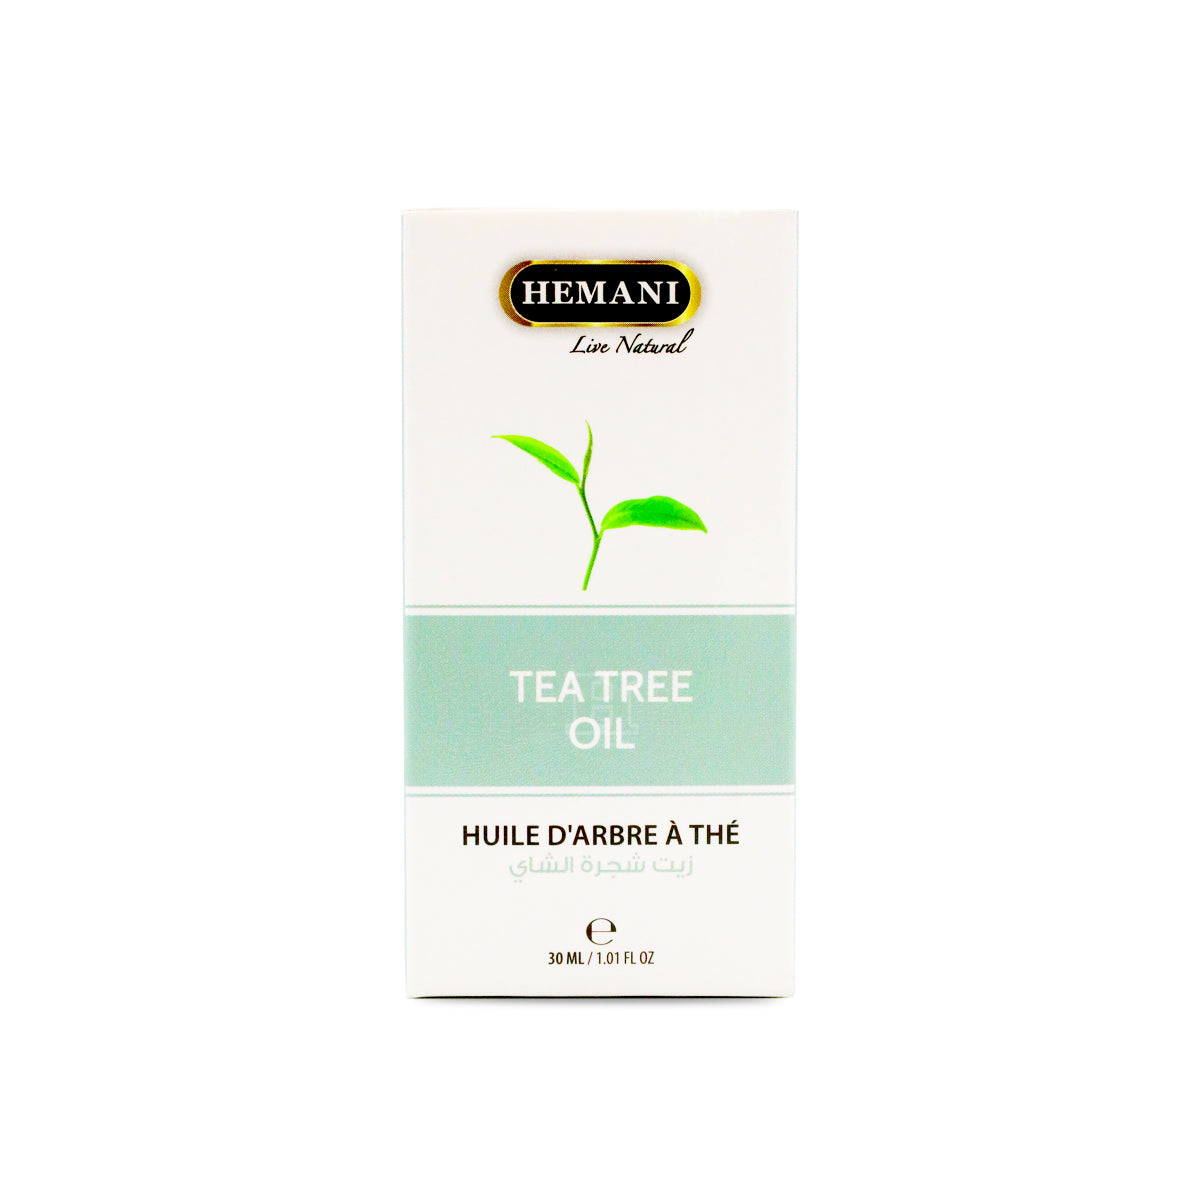 Hemani Tea Tree Oil 30ML